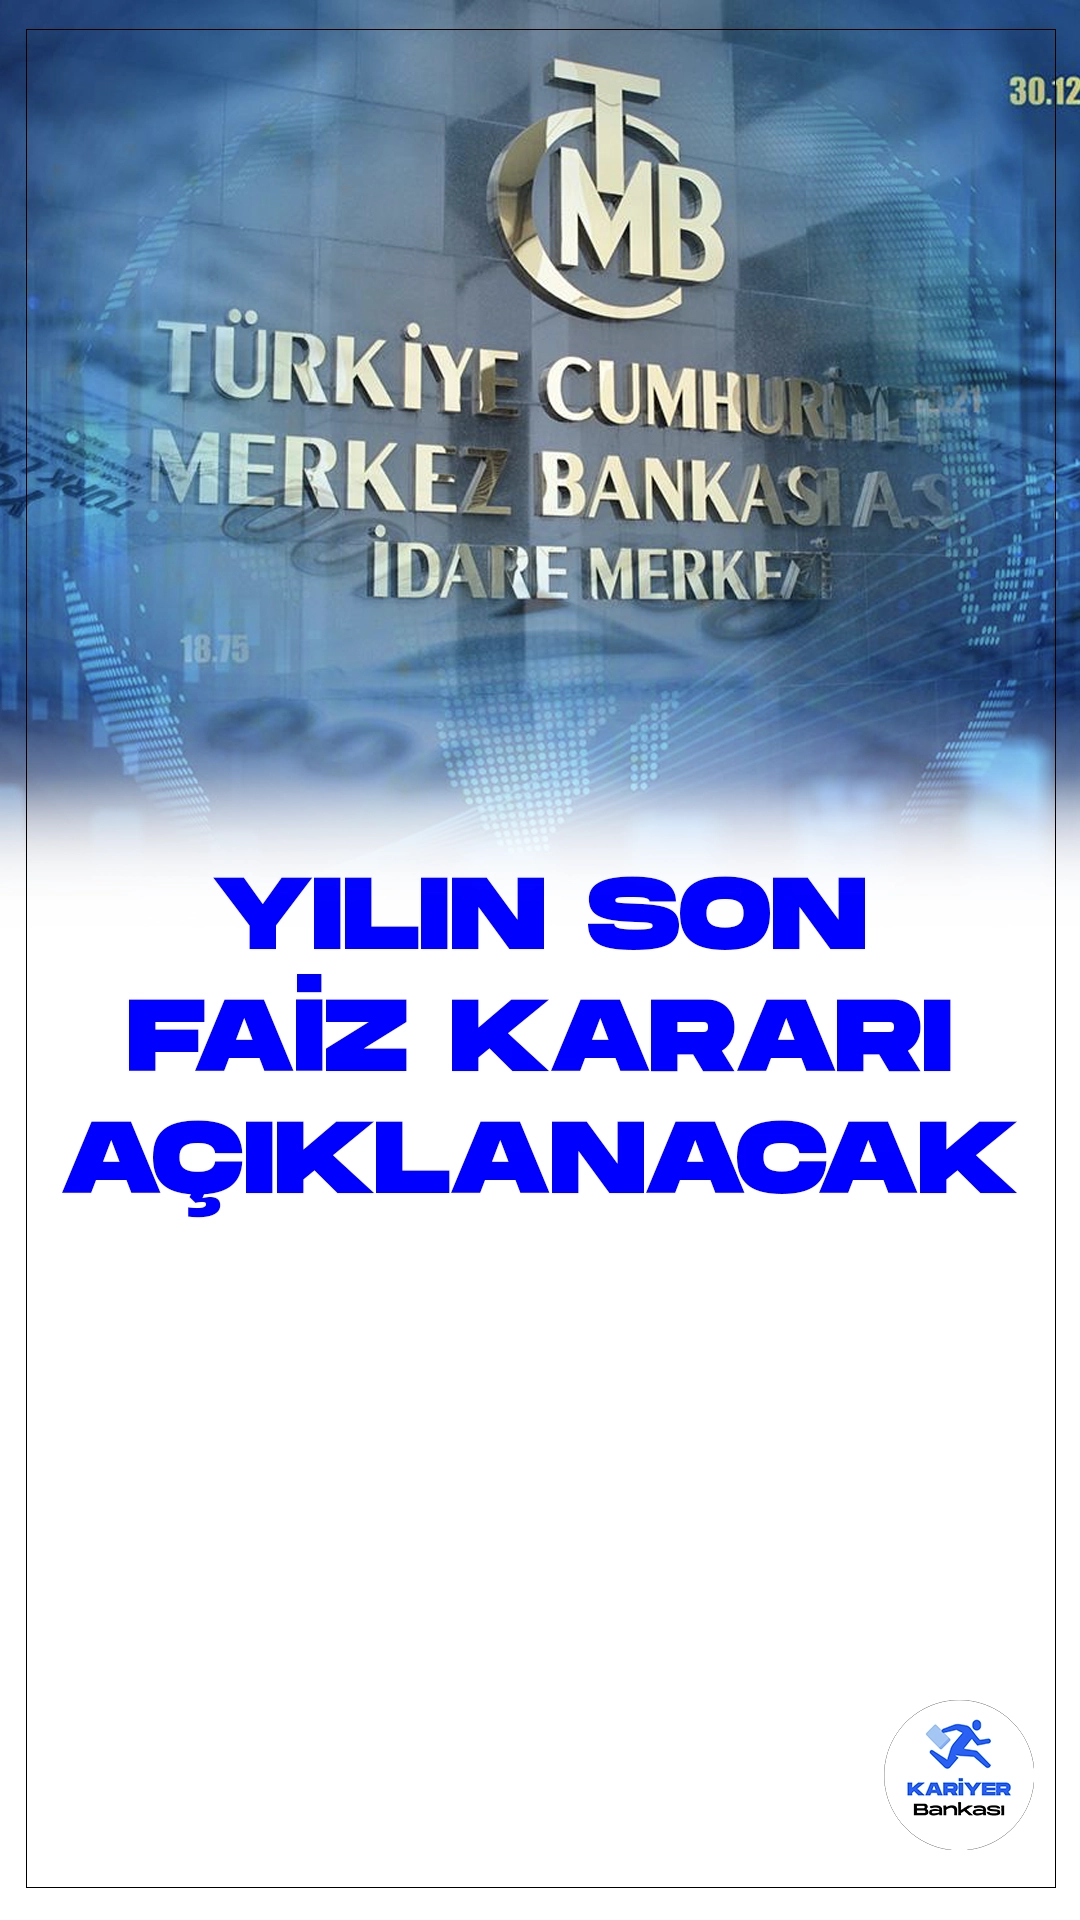 Merkez Bankası Yılın Son Faiz Kararını Açıklayacak.Türkiye Cumhuriyet Merkez Bankası (TCMB) Para Politikası Kurulu, faiz kararını belirlemek üzere 21 Aralık Perşembe günü toplanacak. Toplantının başkanlığını Merkez Bankası Başkanı Hafize Gaye Erkan yapacak.